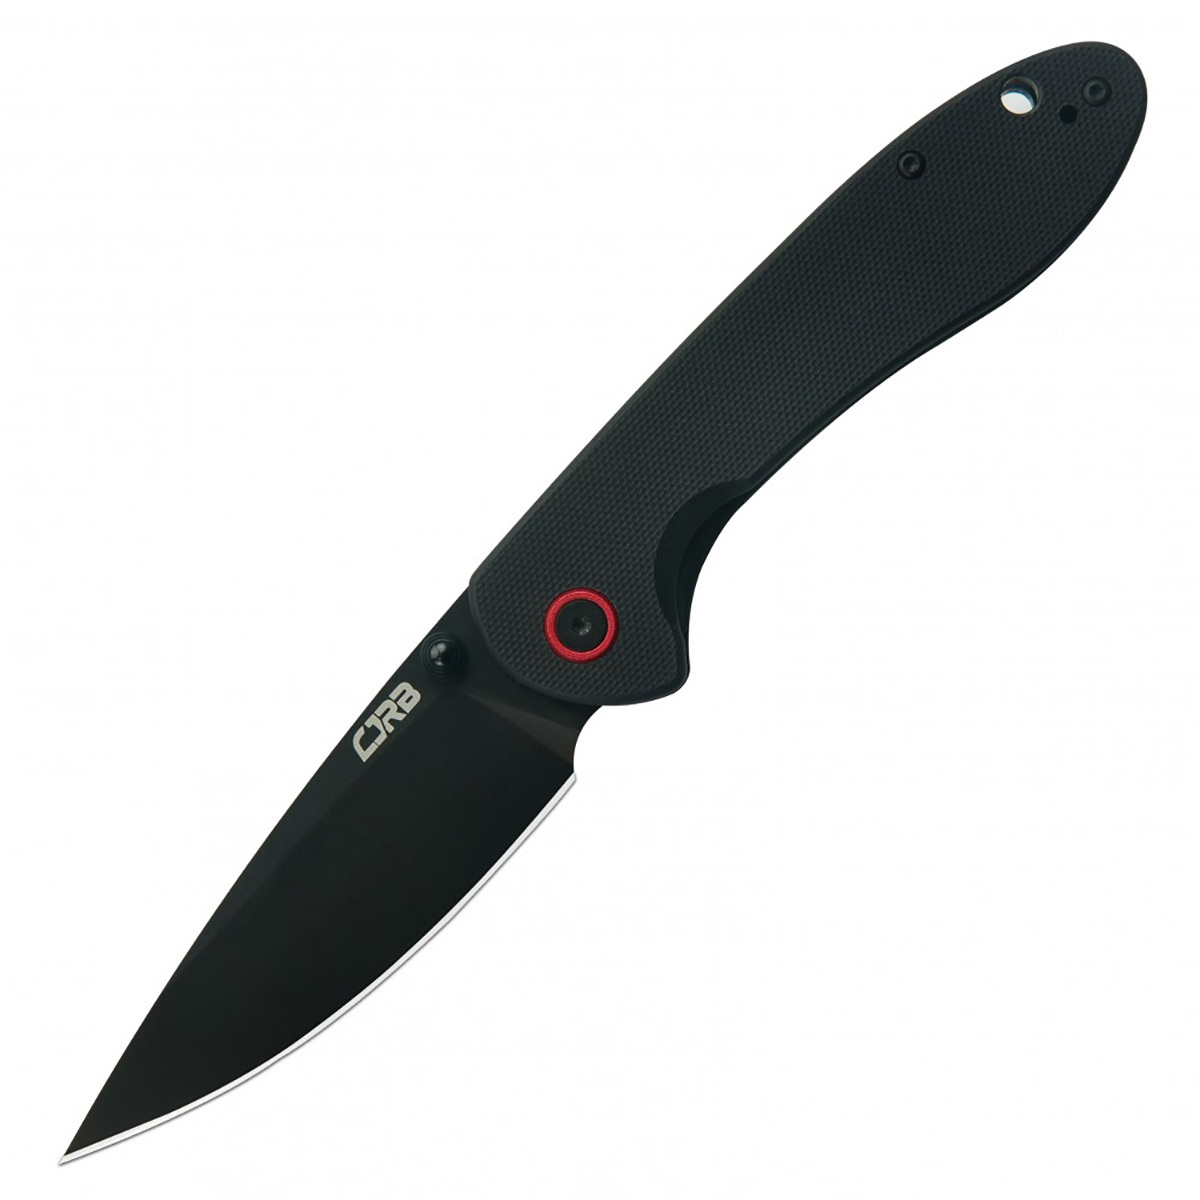 Складной нож CJRB Feldspar, сталь AR-RPM9, рукоять G10, черный, Бренды, CJRB Cutlery